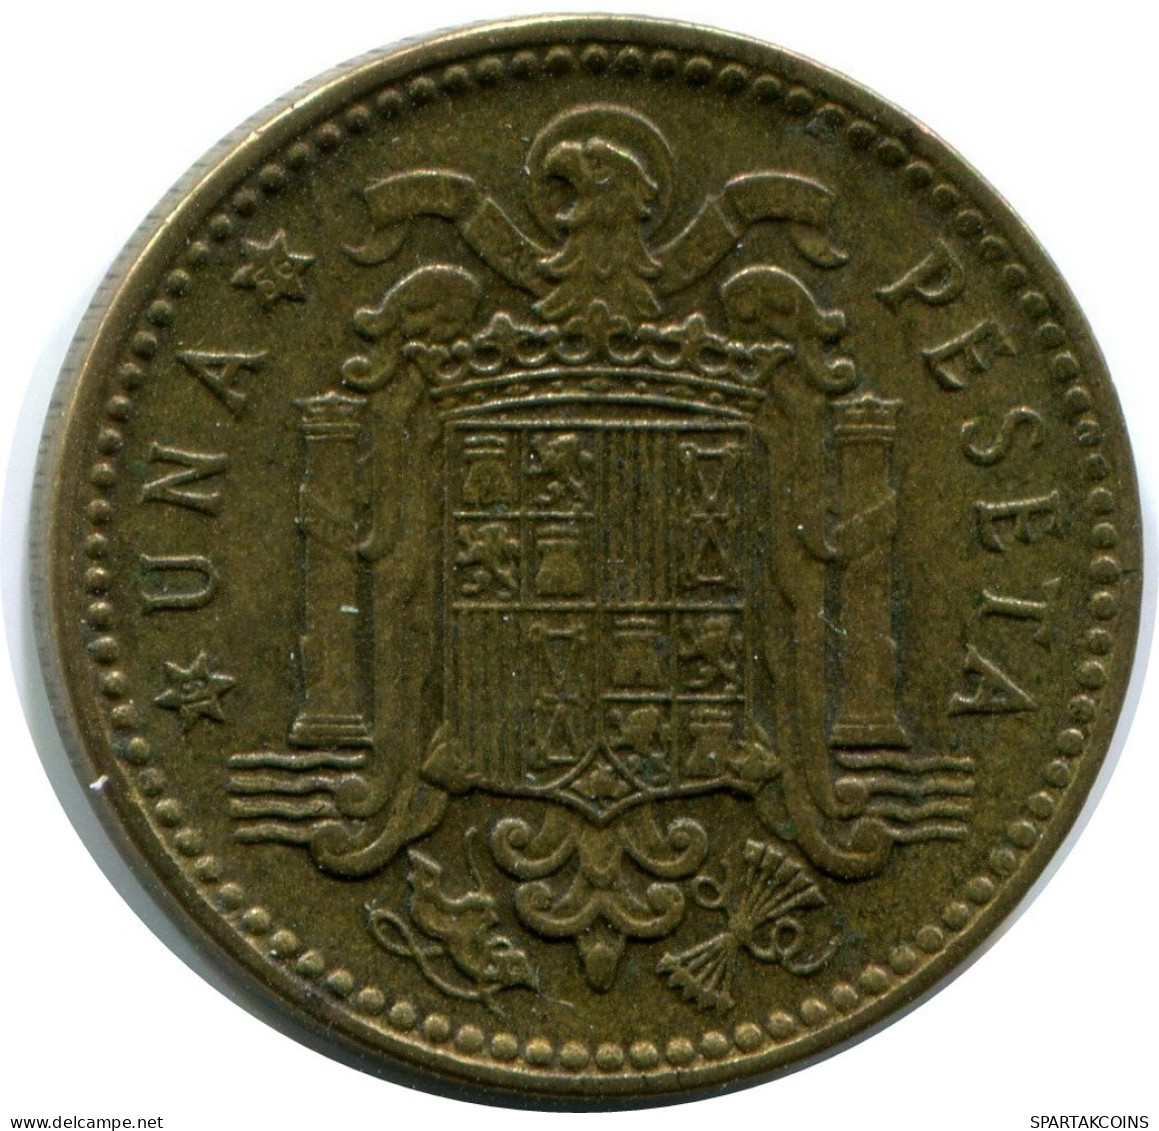 1 PESETA 1953 SPAIN Coin #AW820.U.A - 1 Peseta